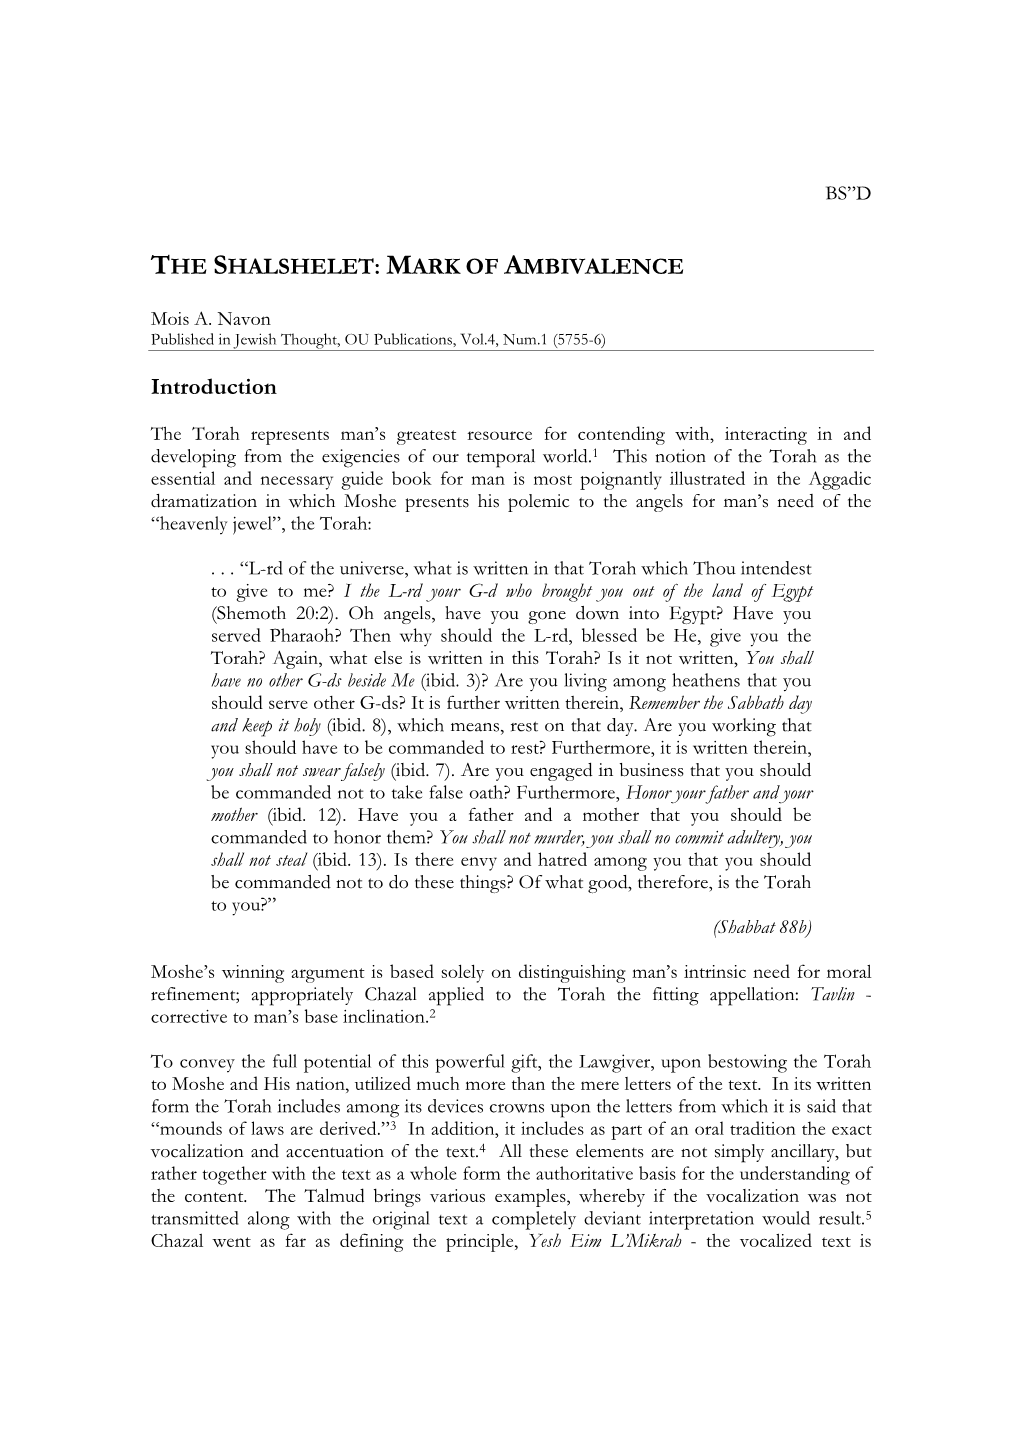 The Shalshelet: Mark of Ambivalence